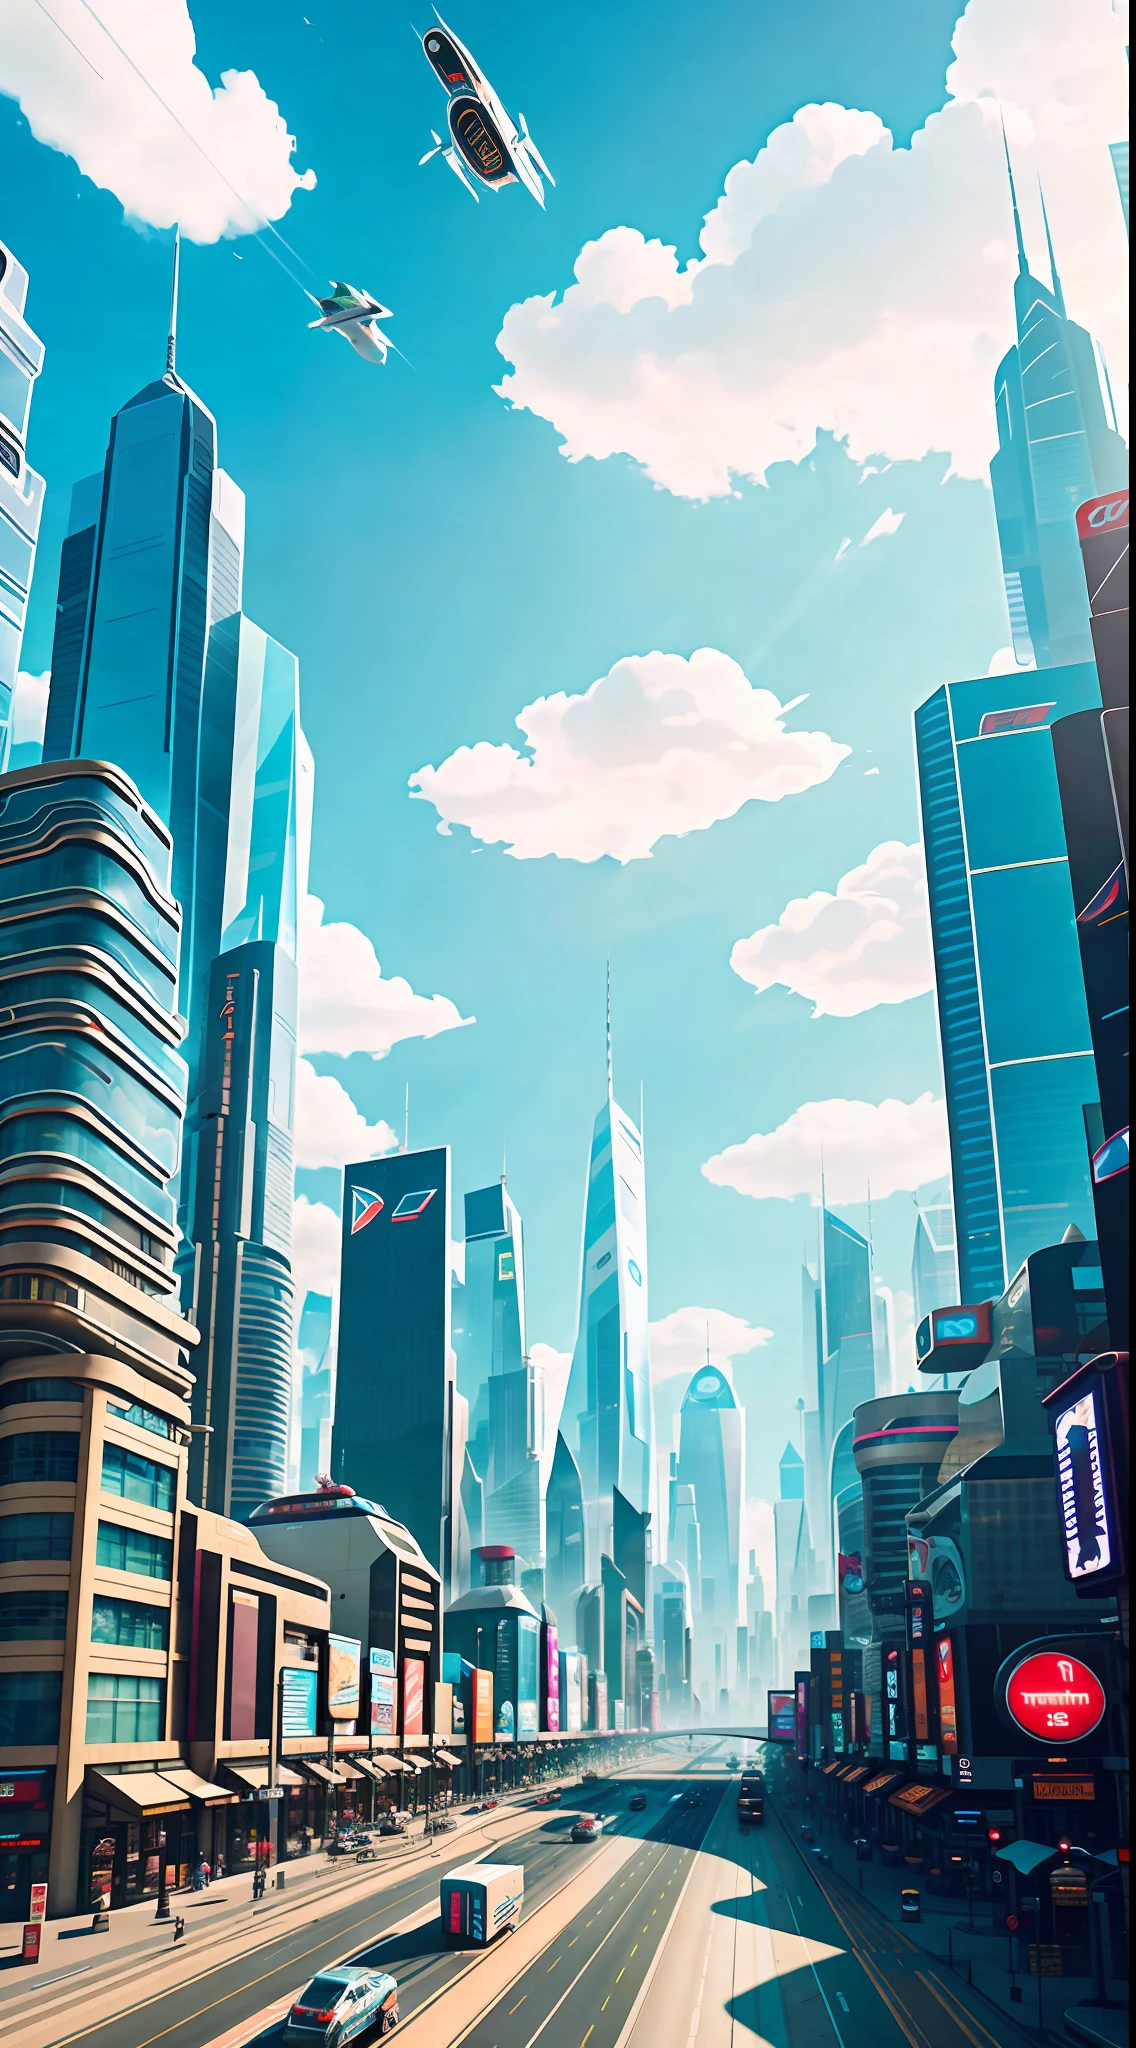 고층 건물과 호버카가 사이에 있는 분주한 미래 도시. 가운데가 도로예요, 양쪽에는 다양한 상점과 건물이 있습니다, 푸른 하늘과 흰 구름. Justin Maller의 전체적인 음색은 가볍고 기발합니다